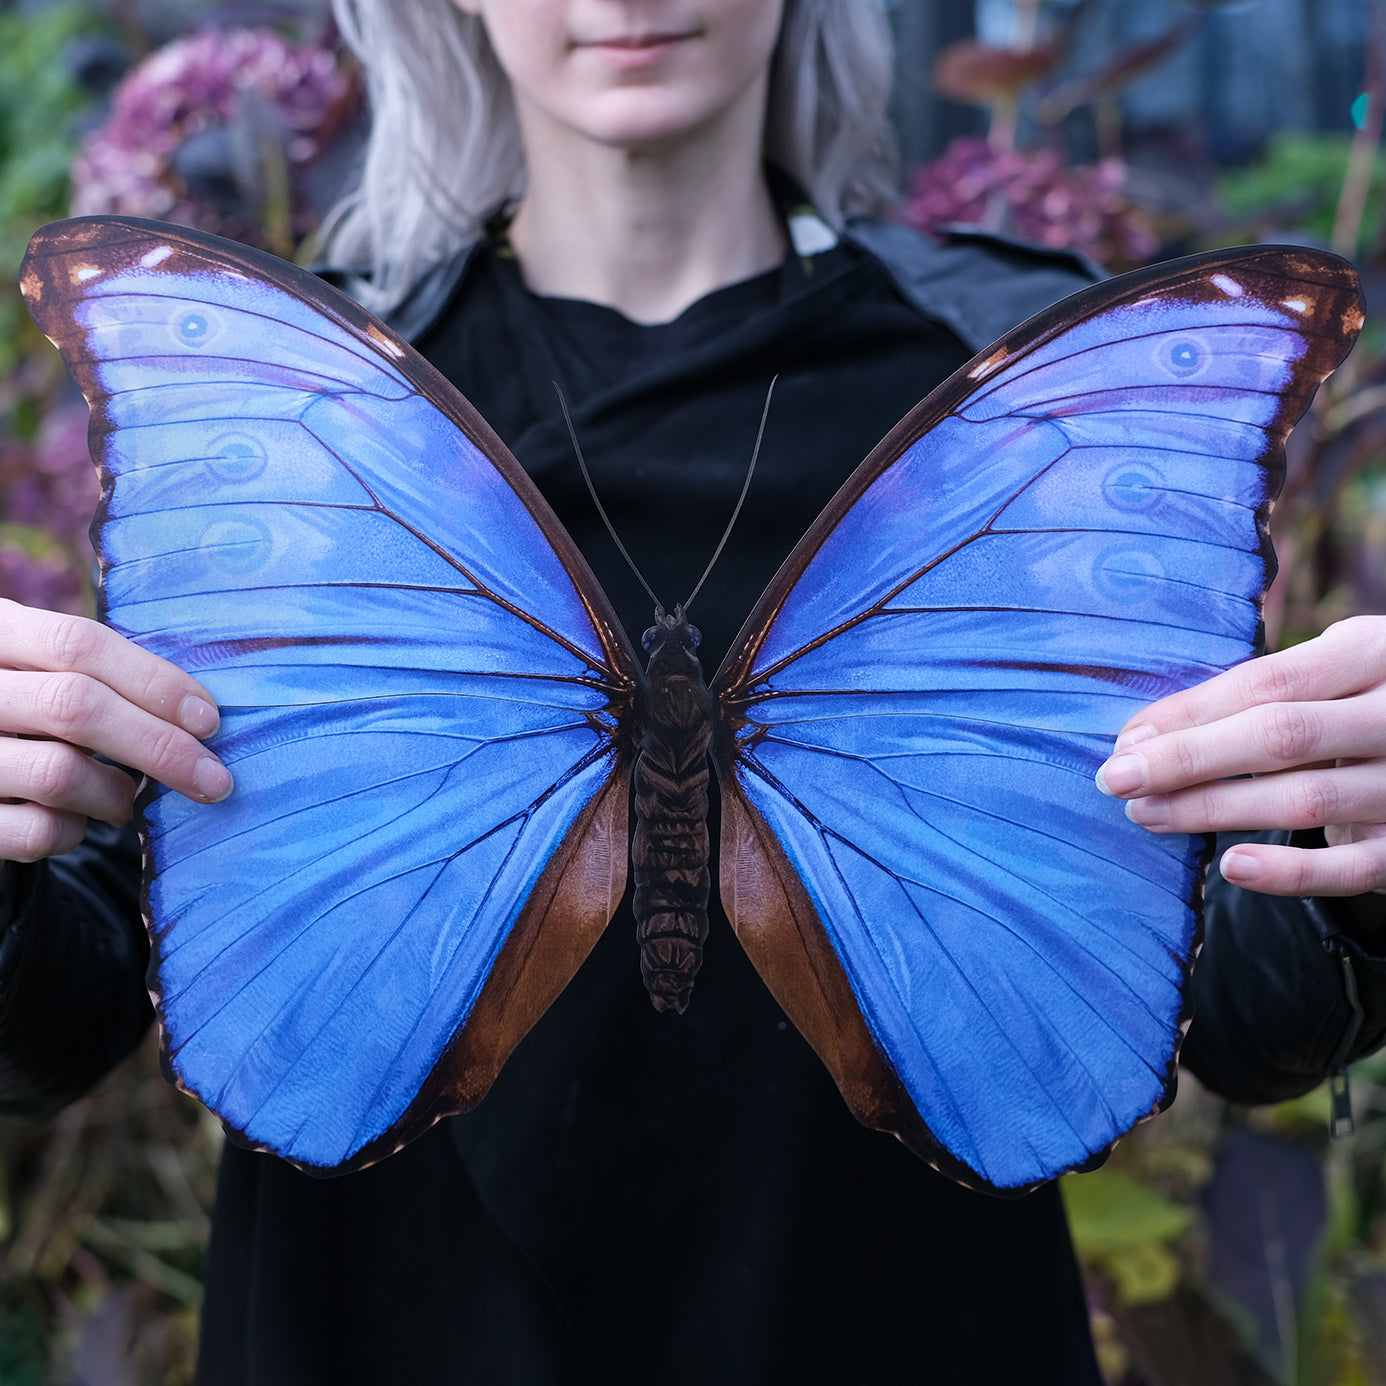 💫New💫 Giant Blue Morpho Godarti Butterfly